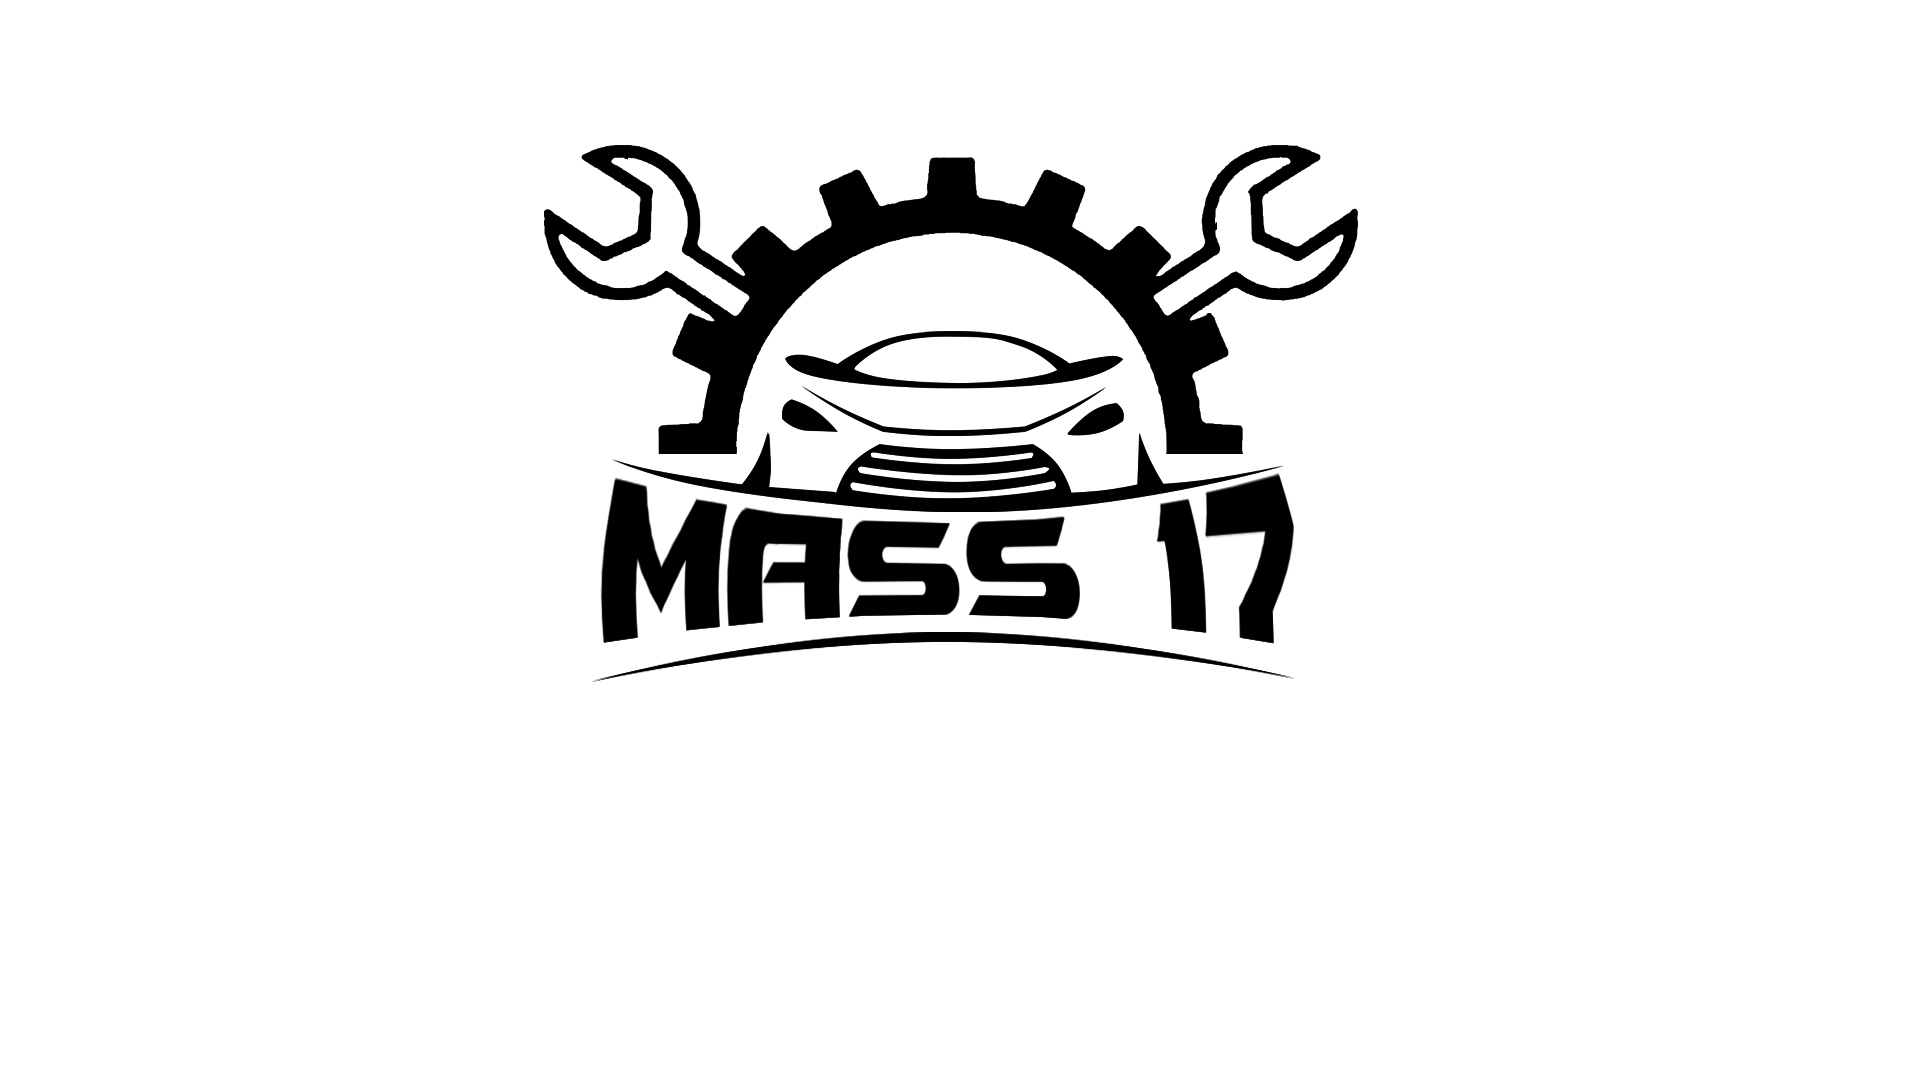 MASS 2K17